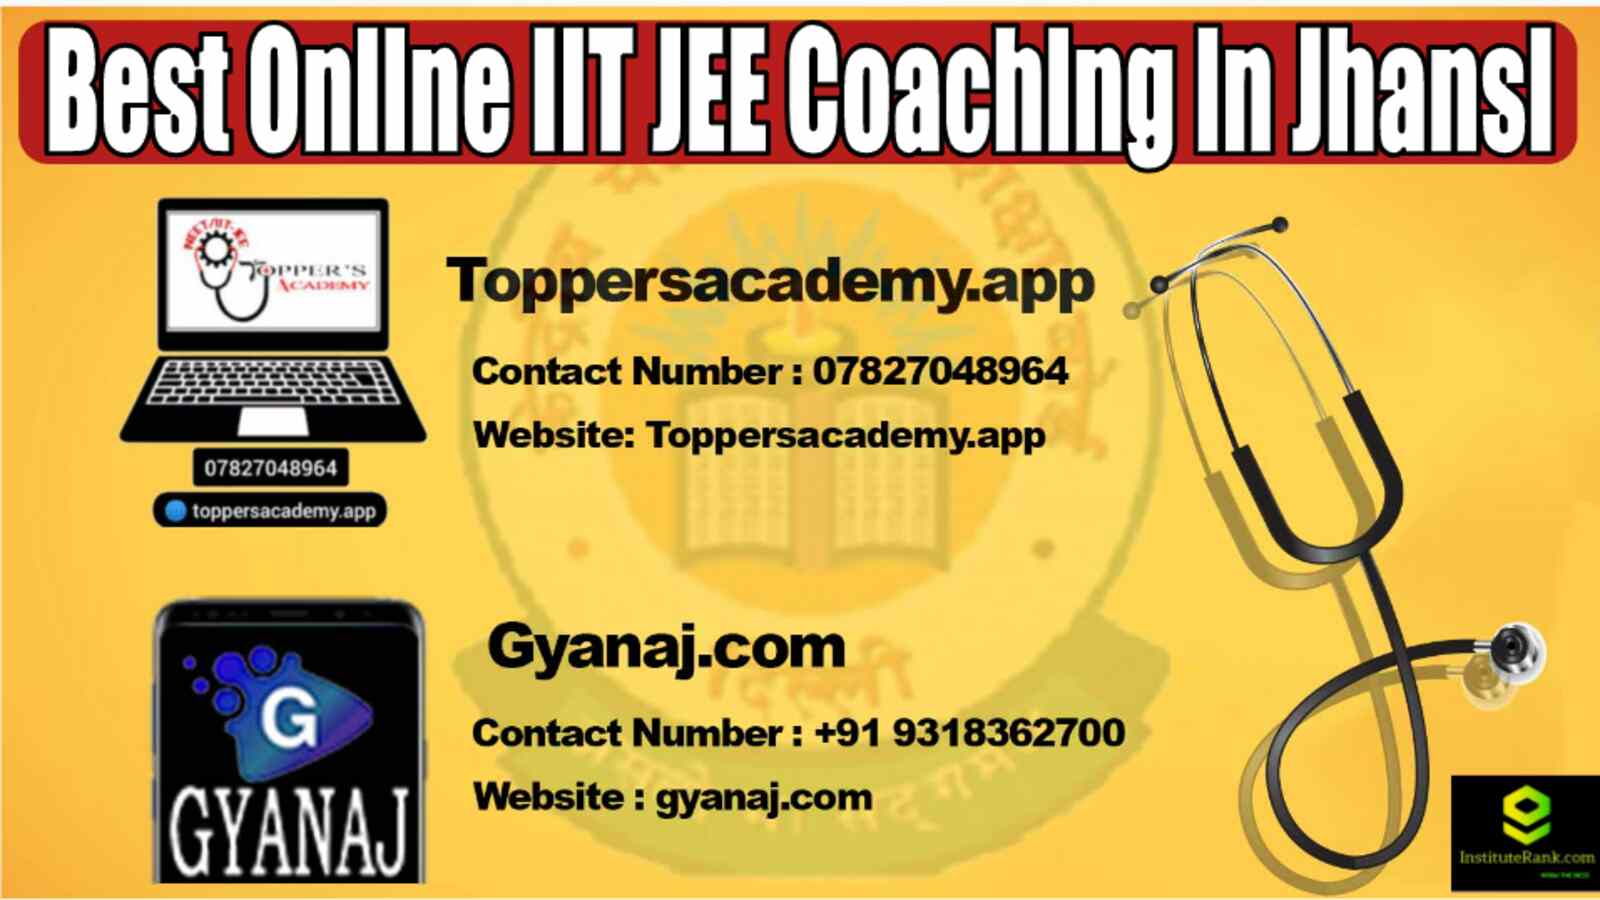 Best Online IIT JEE Coaching in Jhansi 2022